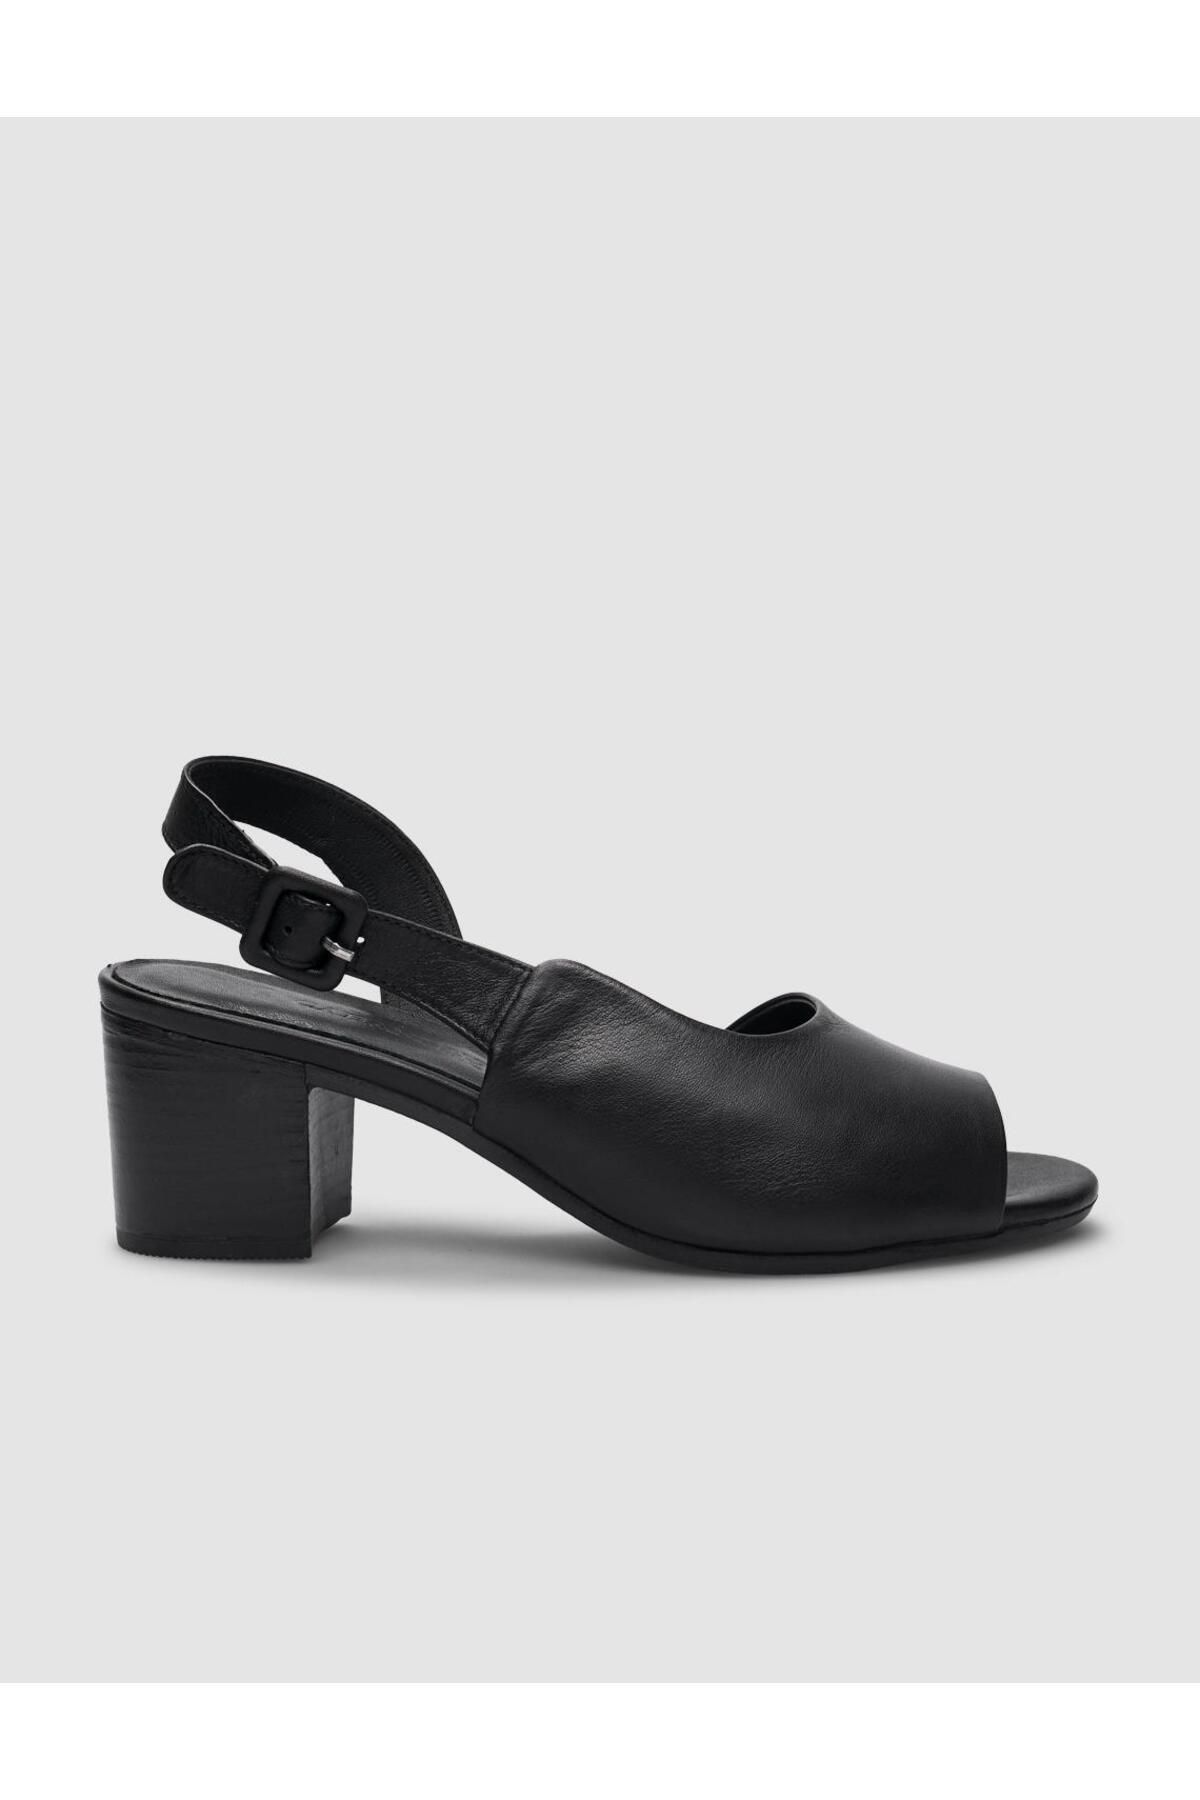 Cabani %100 Hakiki Deri Siyah Toka Detaylı Kadın Topuklu Sandalet